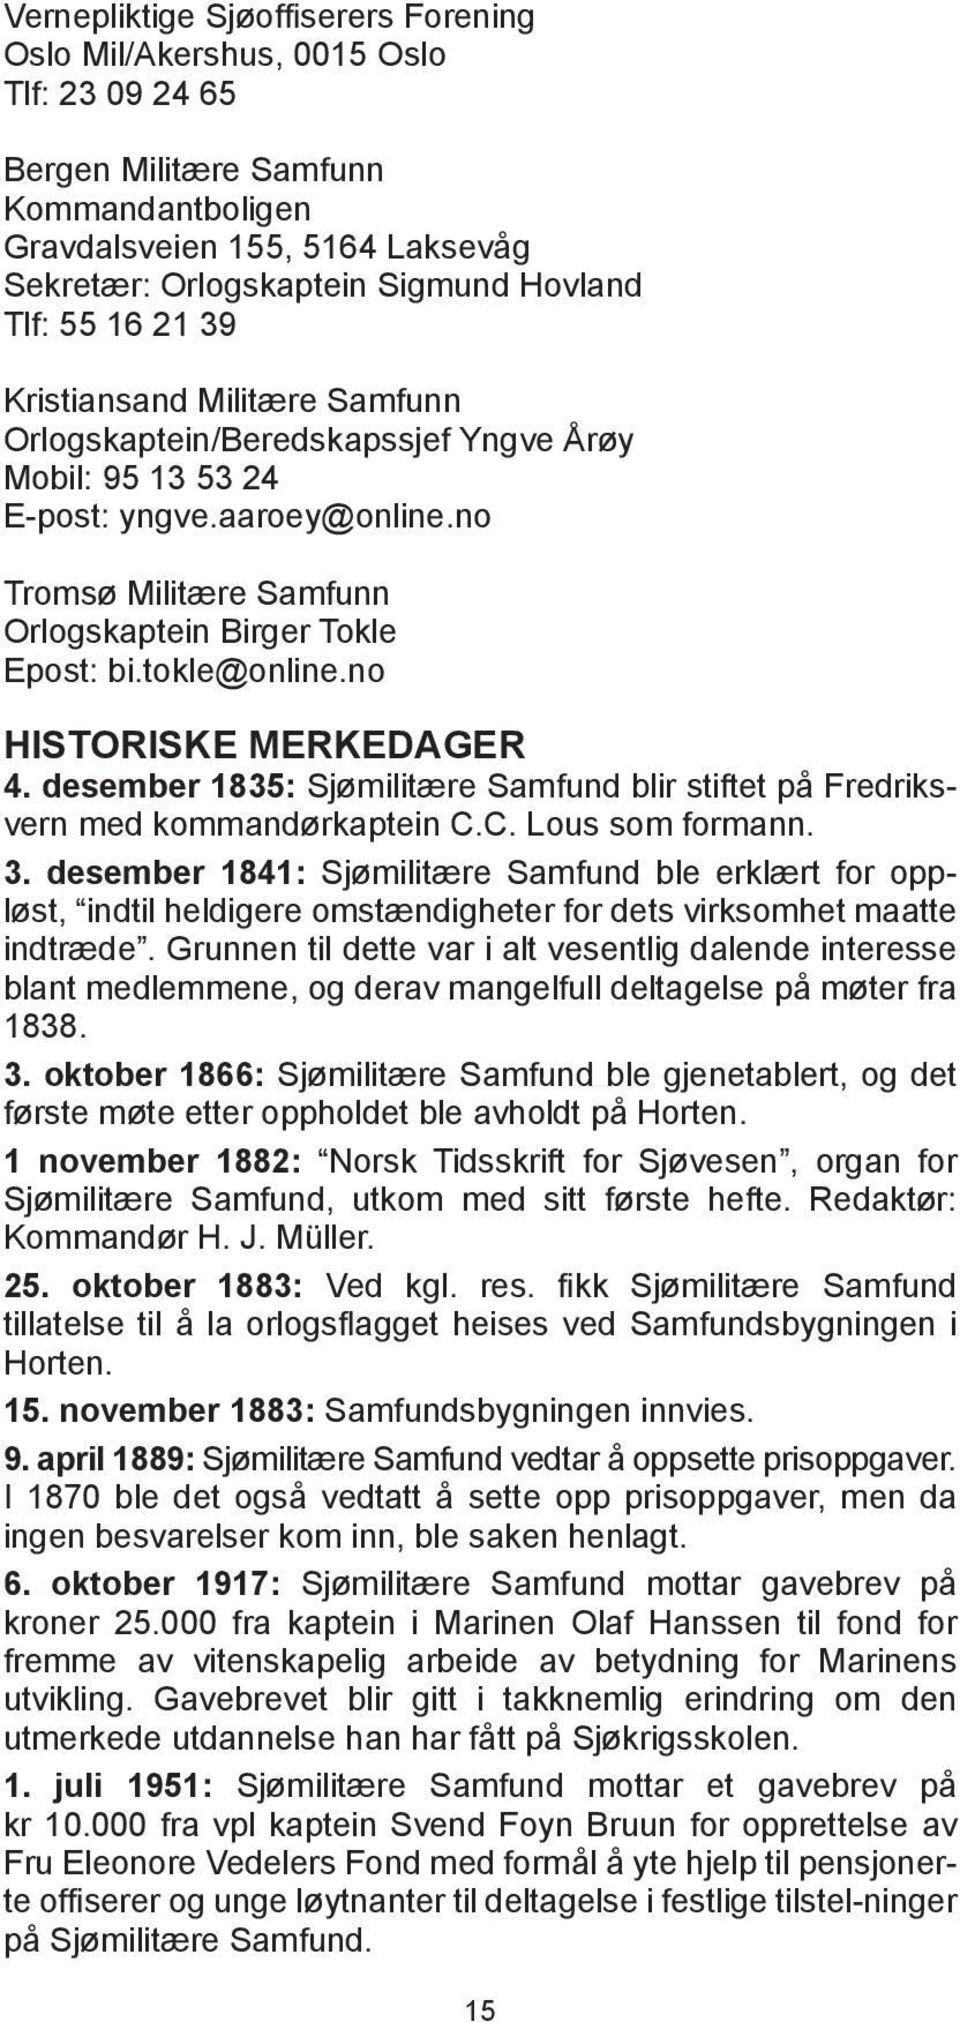 tokle@online.no HISTORISKE MERKEDAGER 4. desember 1835: Sjømilitære Samfund blir stiftet på Fredriksvern med kommandørkaptein C.C. Lous som formann. 3.